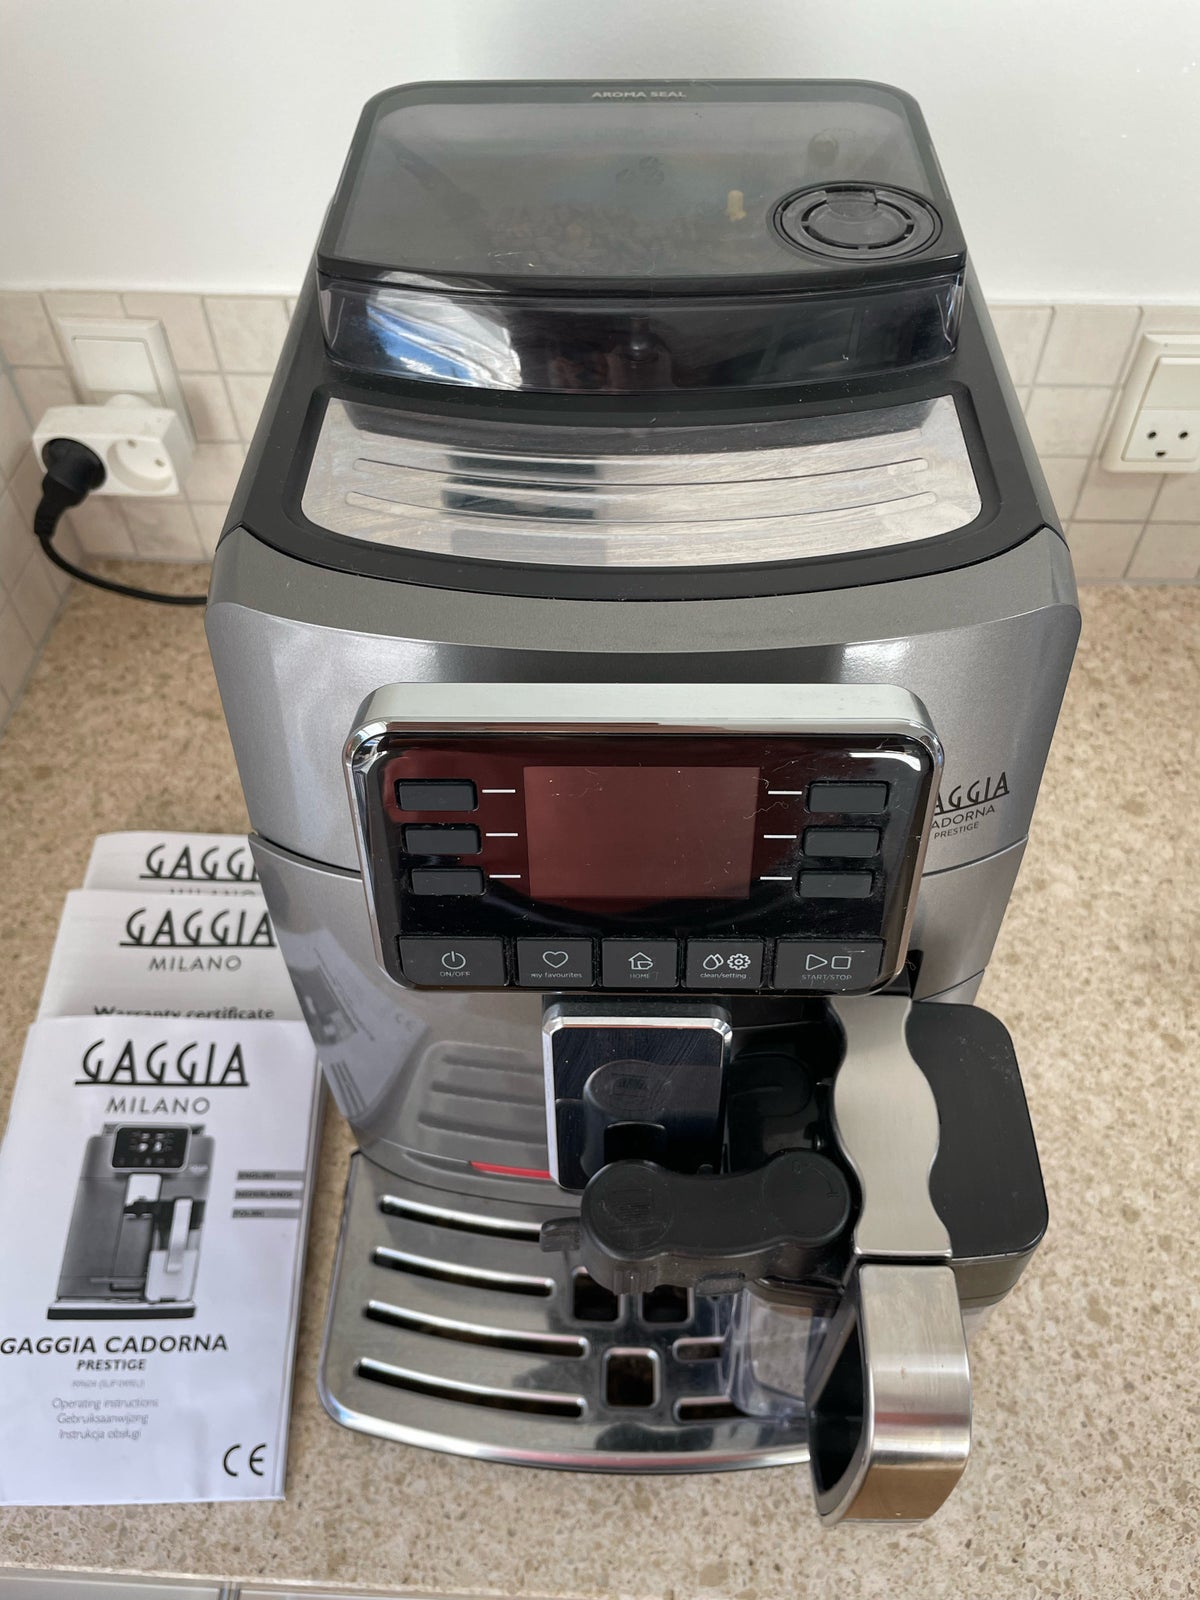 Fuldautomatisk espressomaskine, Gaggia cadorna